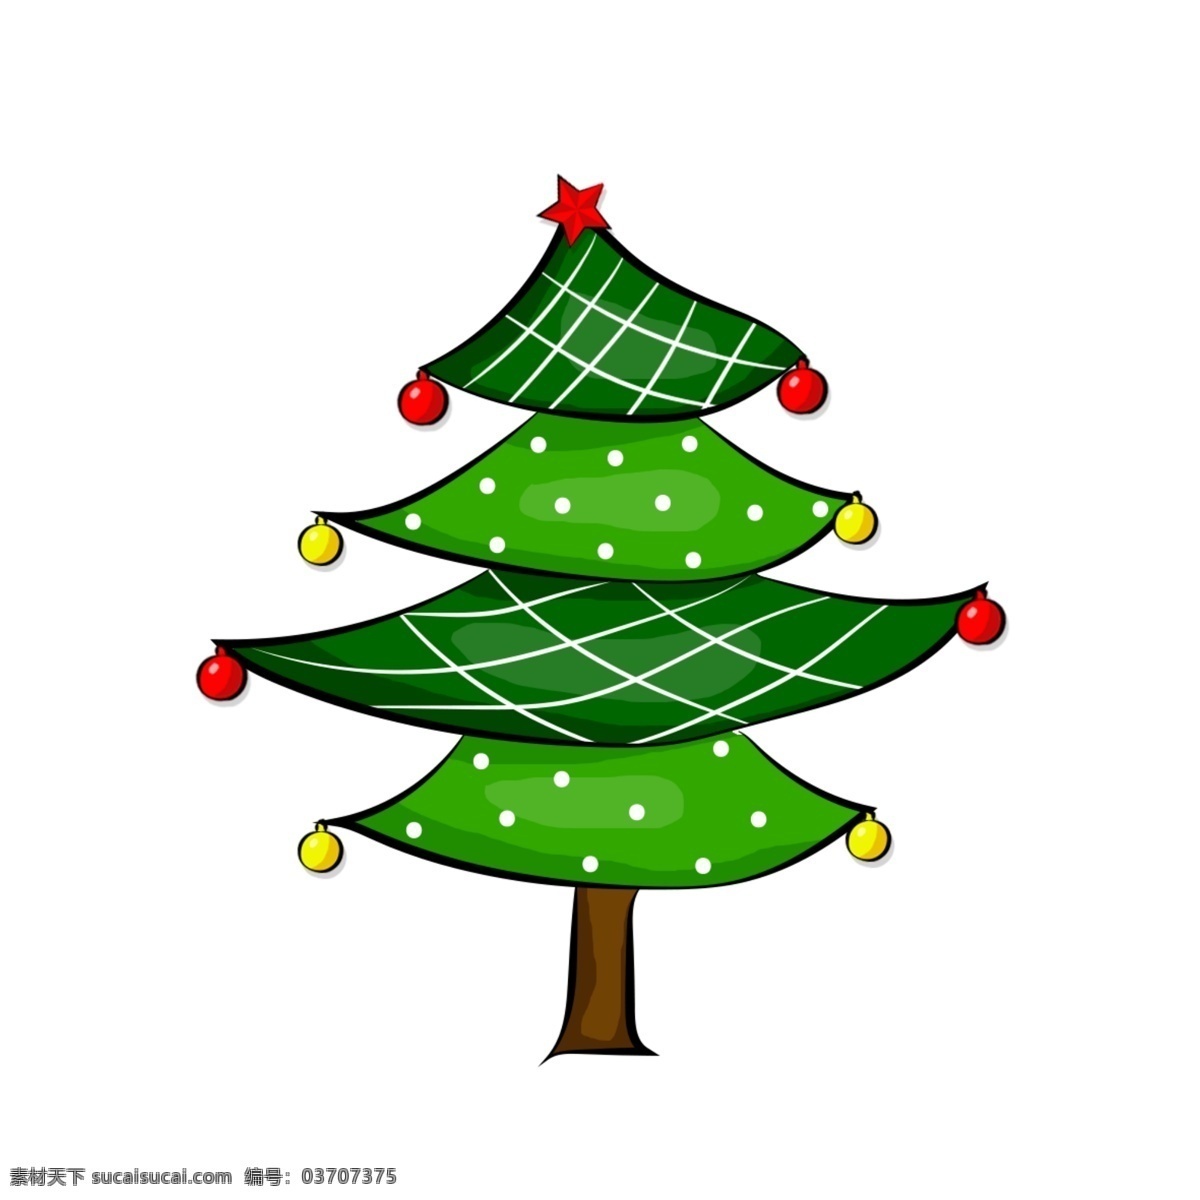 圣诞 矢量 圣诞树 装饰 元素 装饰元素 圣诞树矢量 矢量元素 节日 树